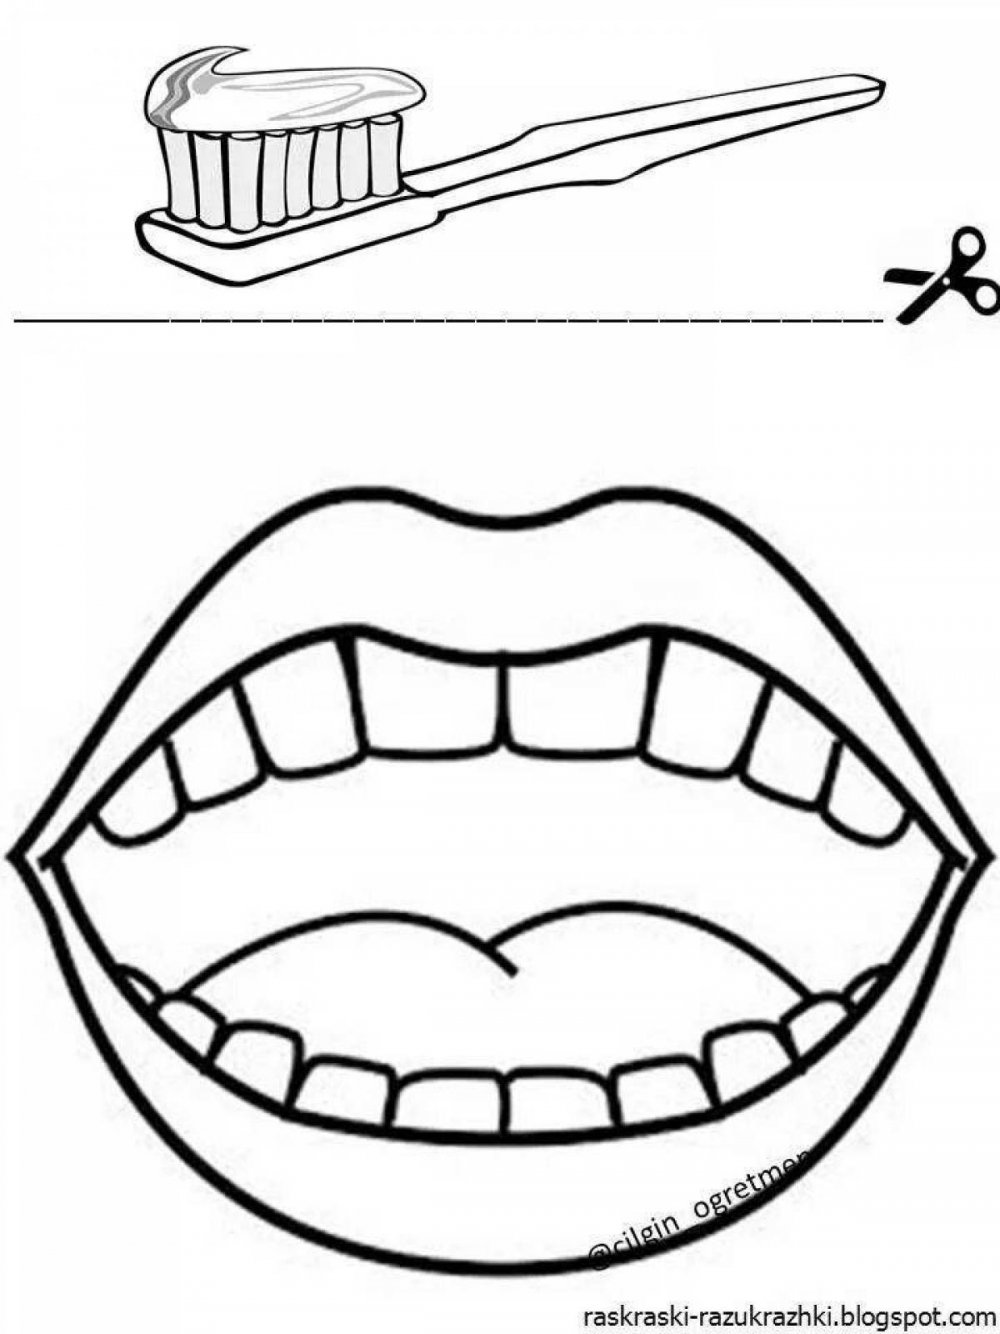 Зарисовка зуба